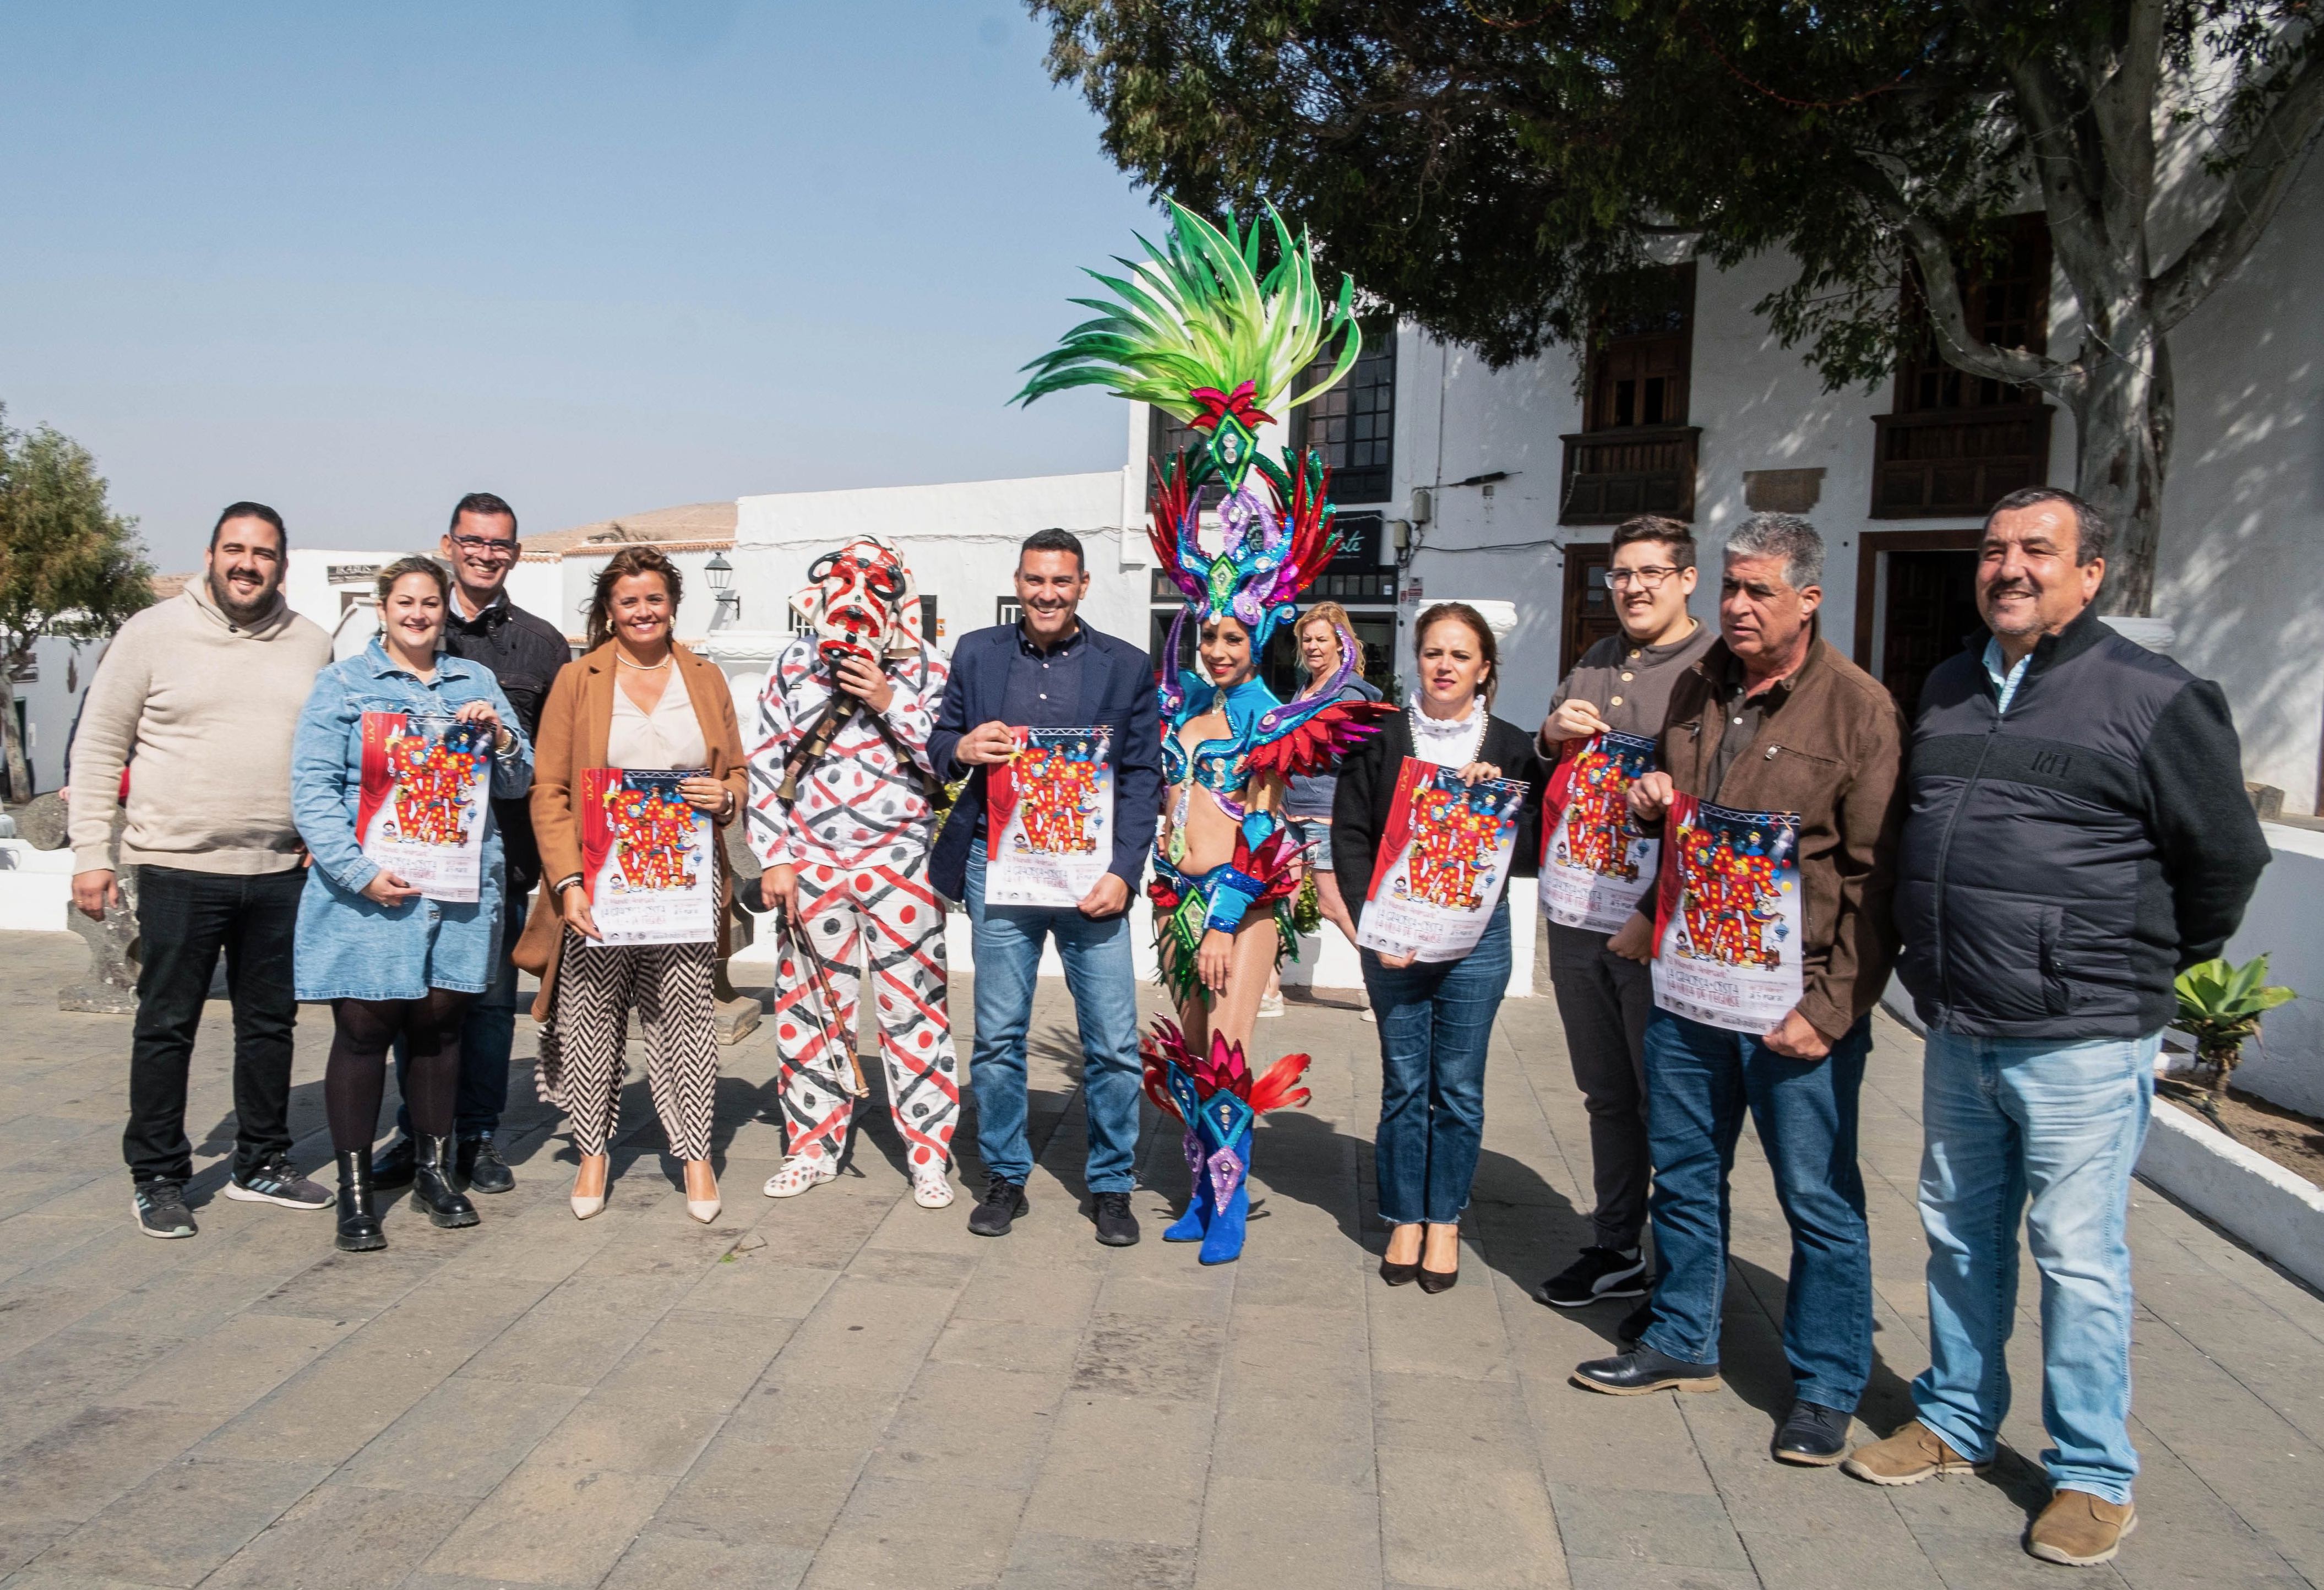 Anuncio del cartel de Carnaval de Costa Teguise, La Villa y La Graciosa